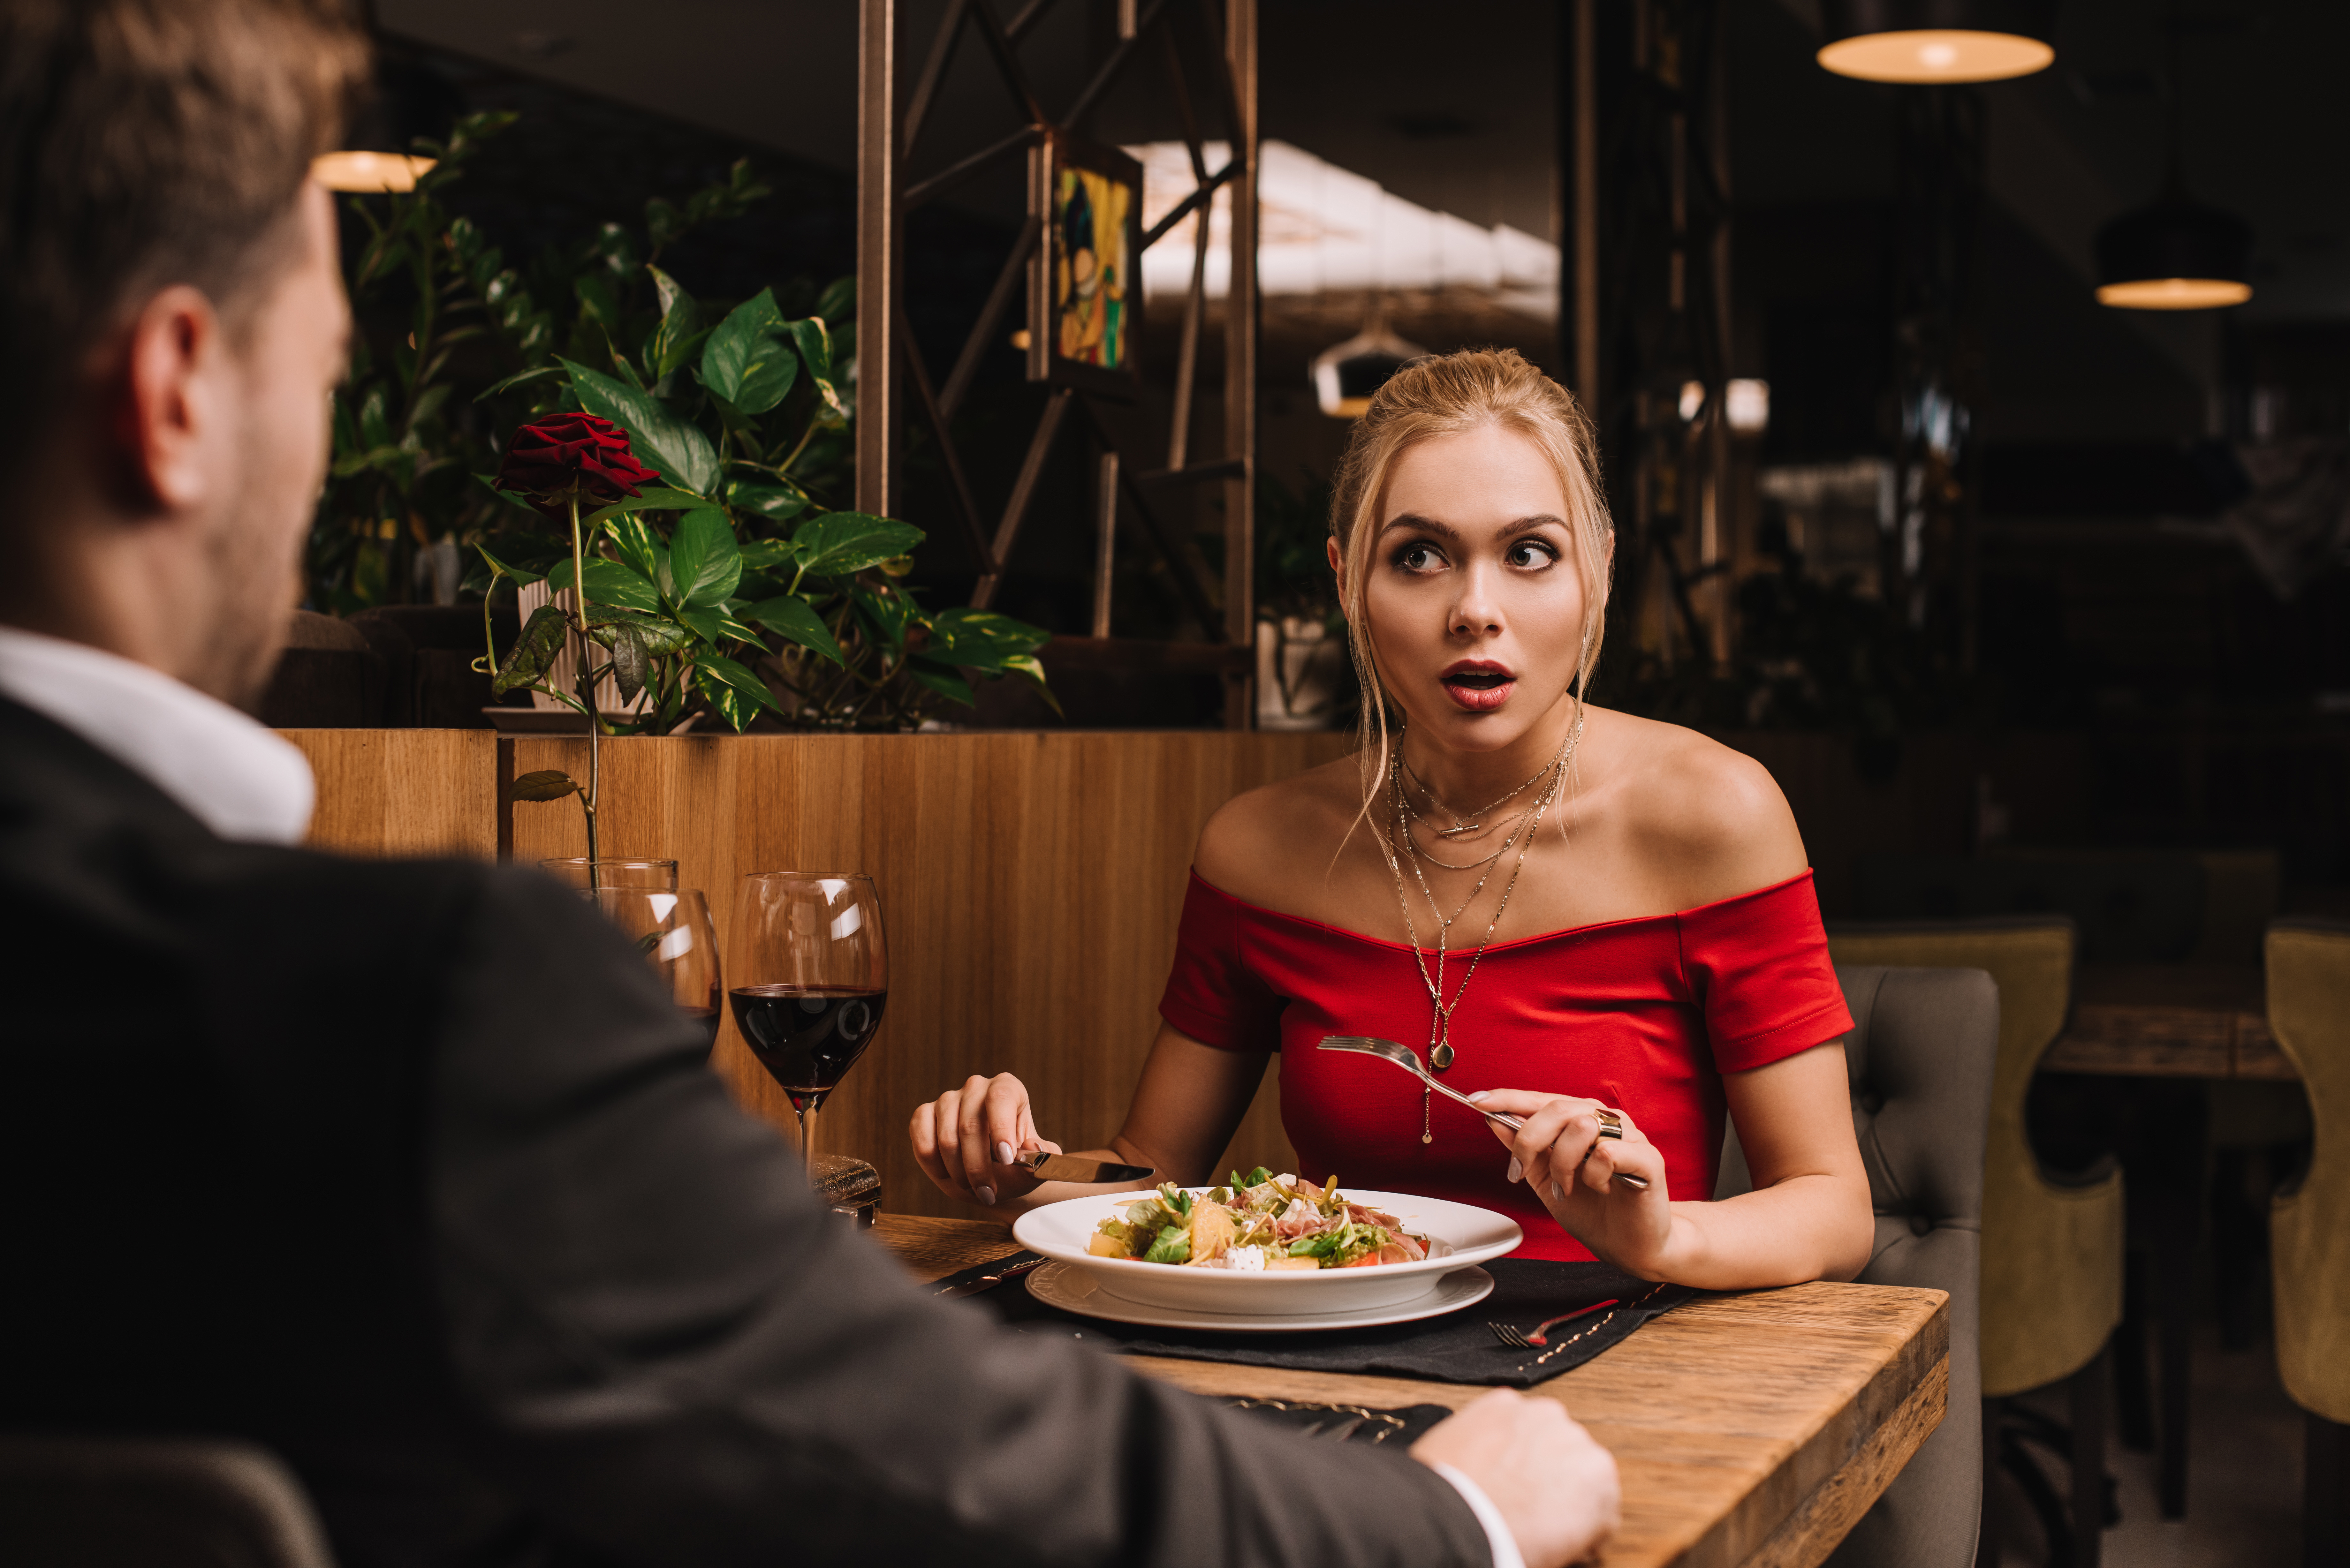 Eine junge Frau schaut den Mann beim Abendessen schockiert an | Quelle: Shutterstock